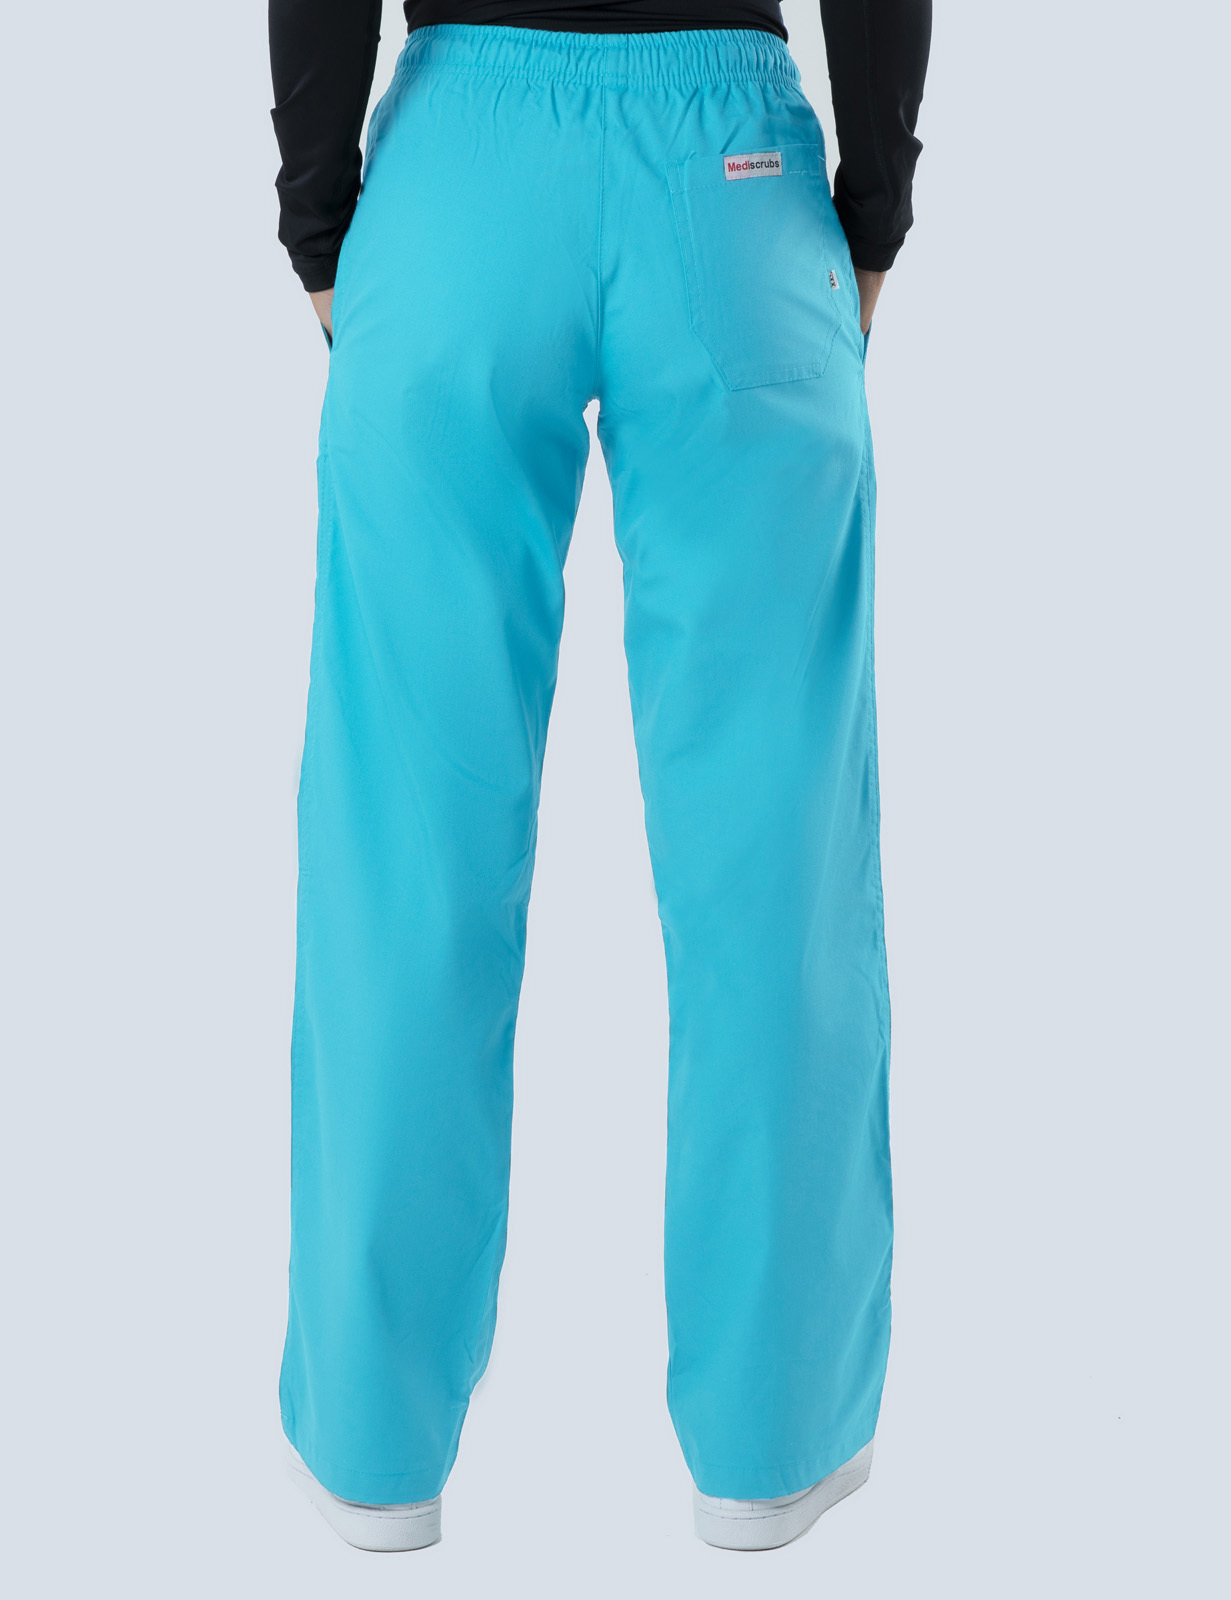 Women's Regular Cut Pants - Aqua - 2X Large